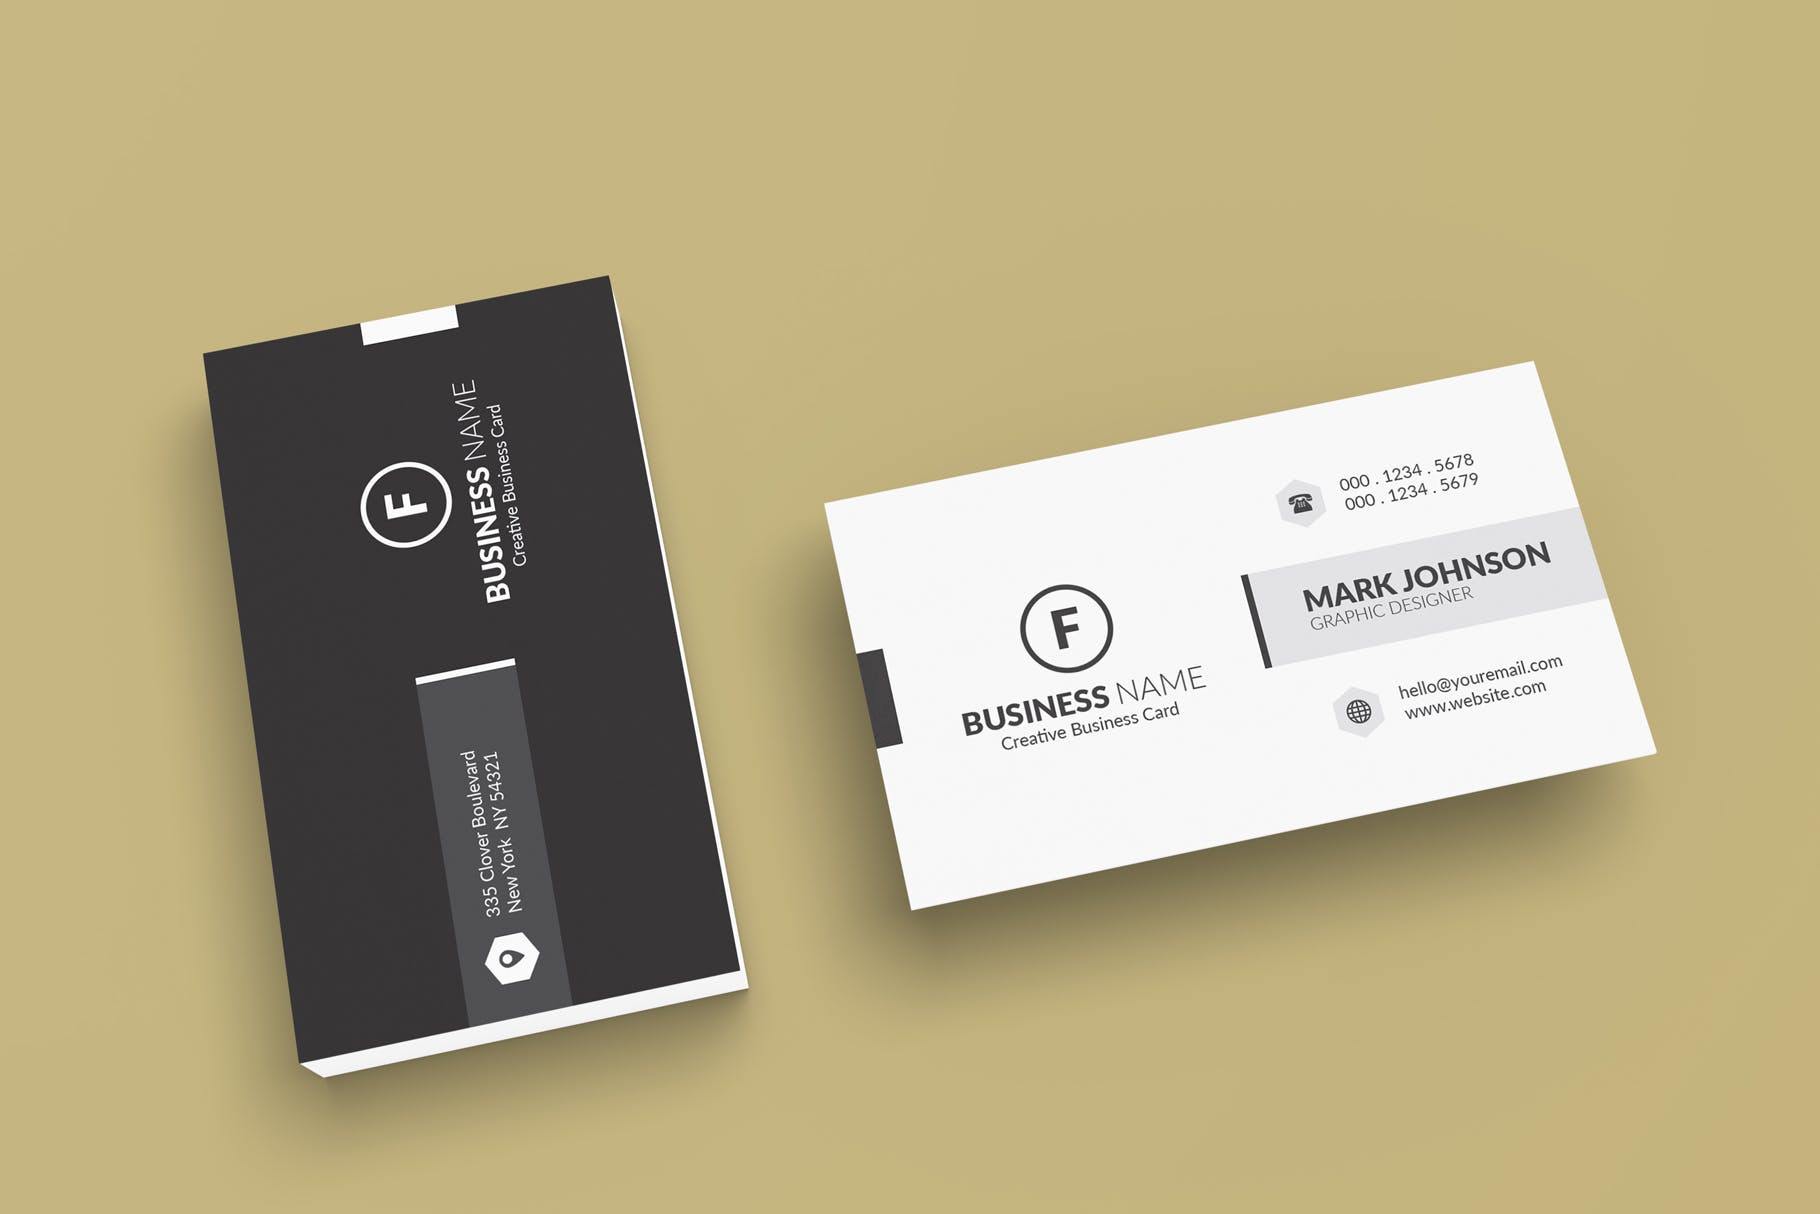 极简设计风格名片设计效果图非凡图库精选 Minimalist Business Cards Mockup插图(3)